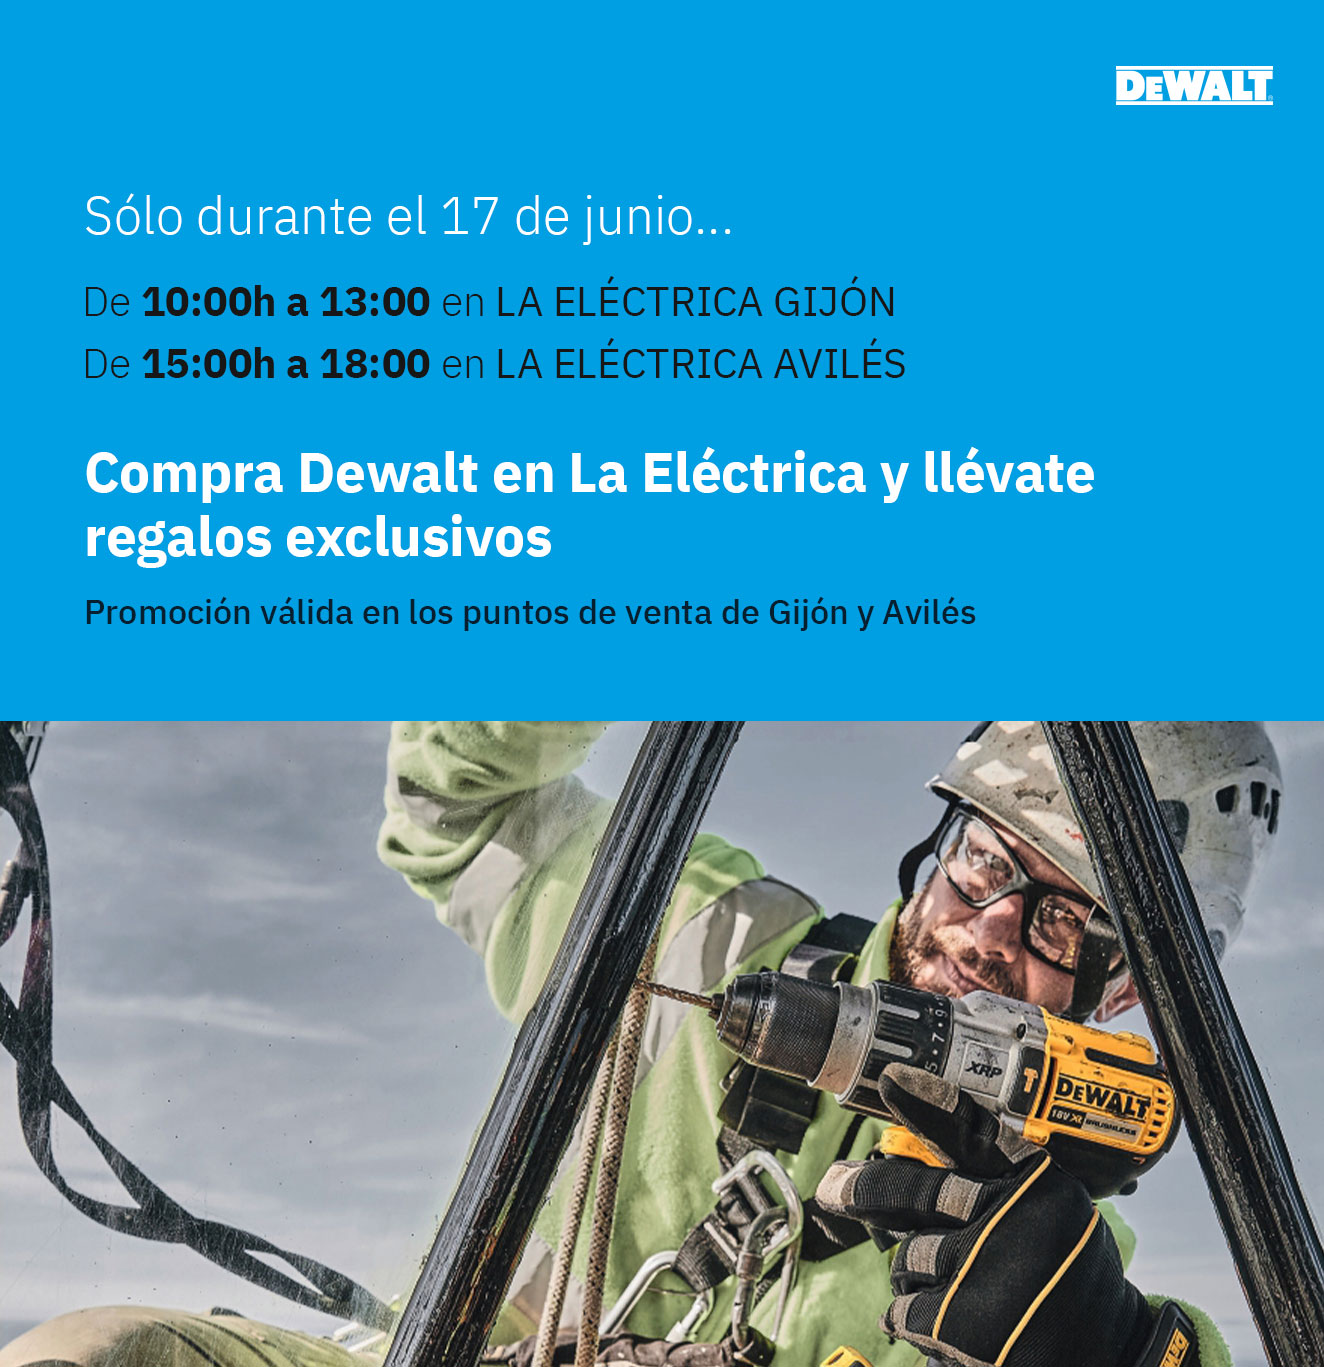 Regalos directos Dewalt en La Eléctrica (Gijón y Avilés) 